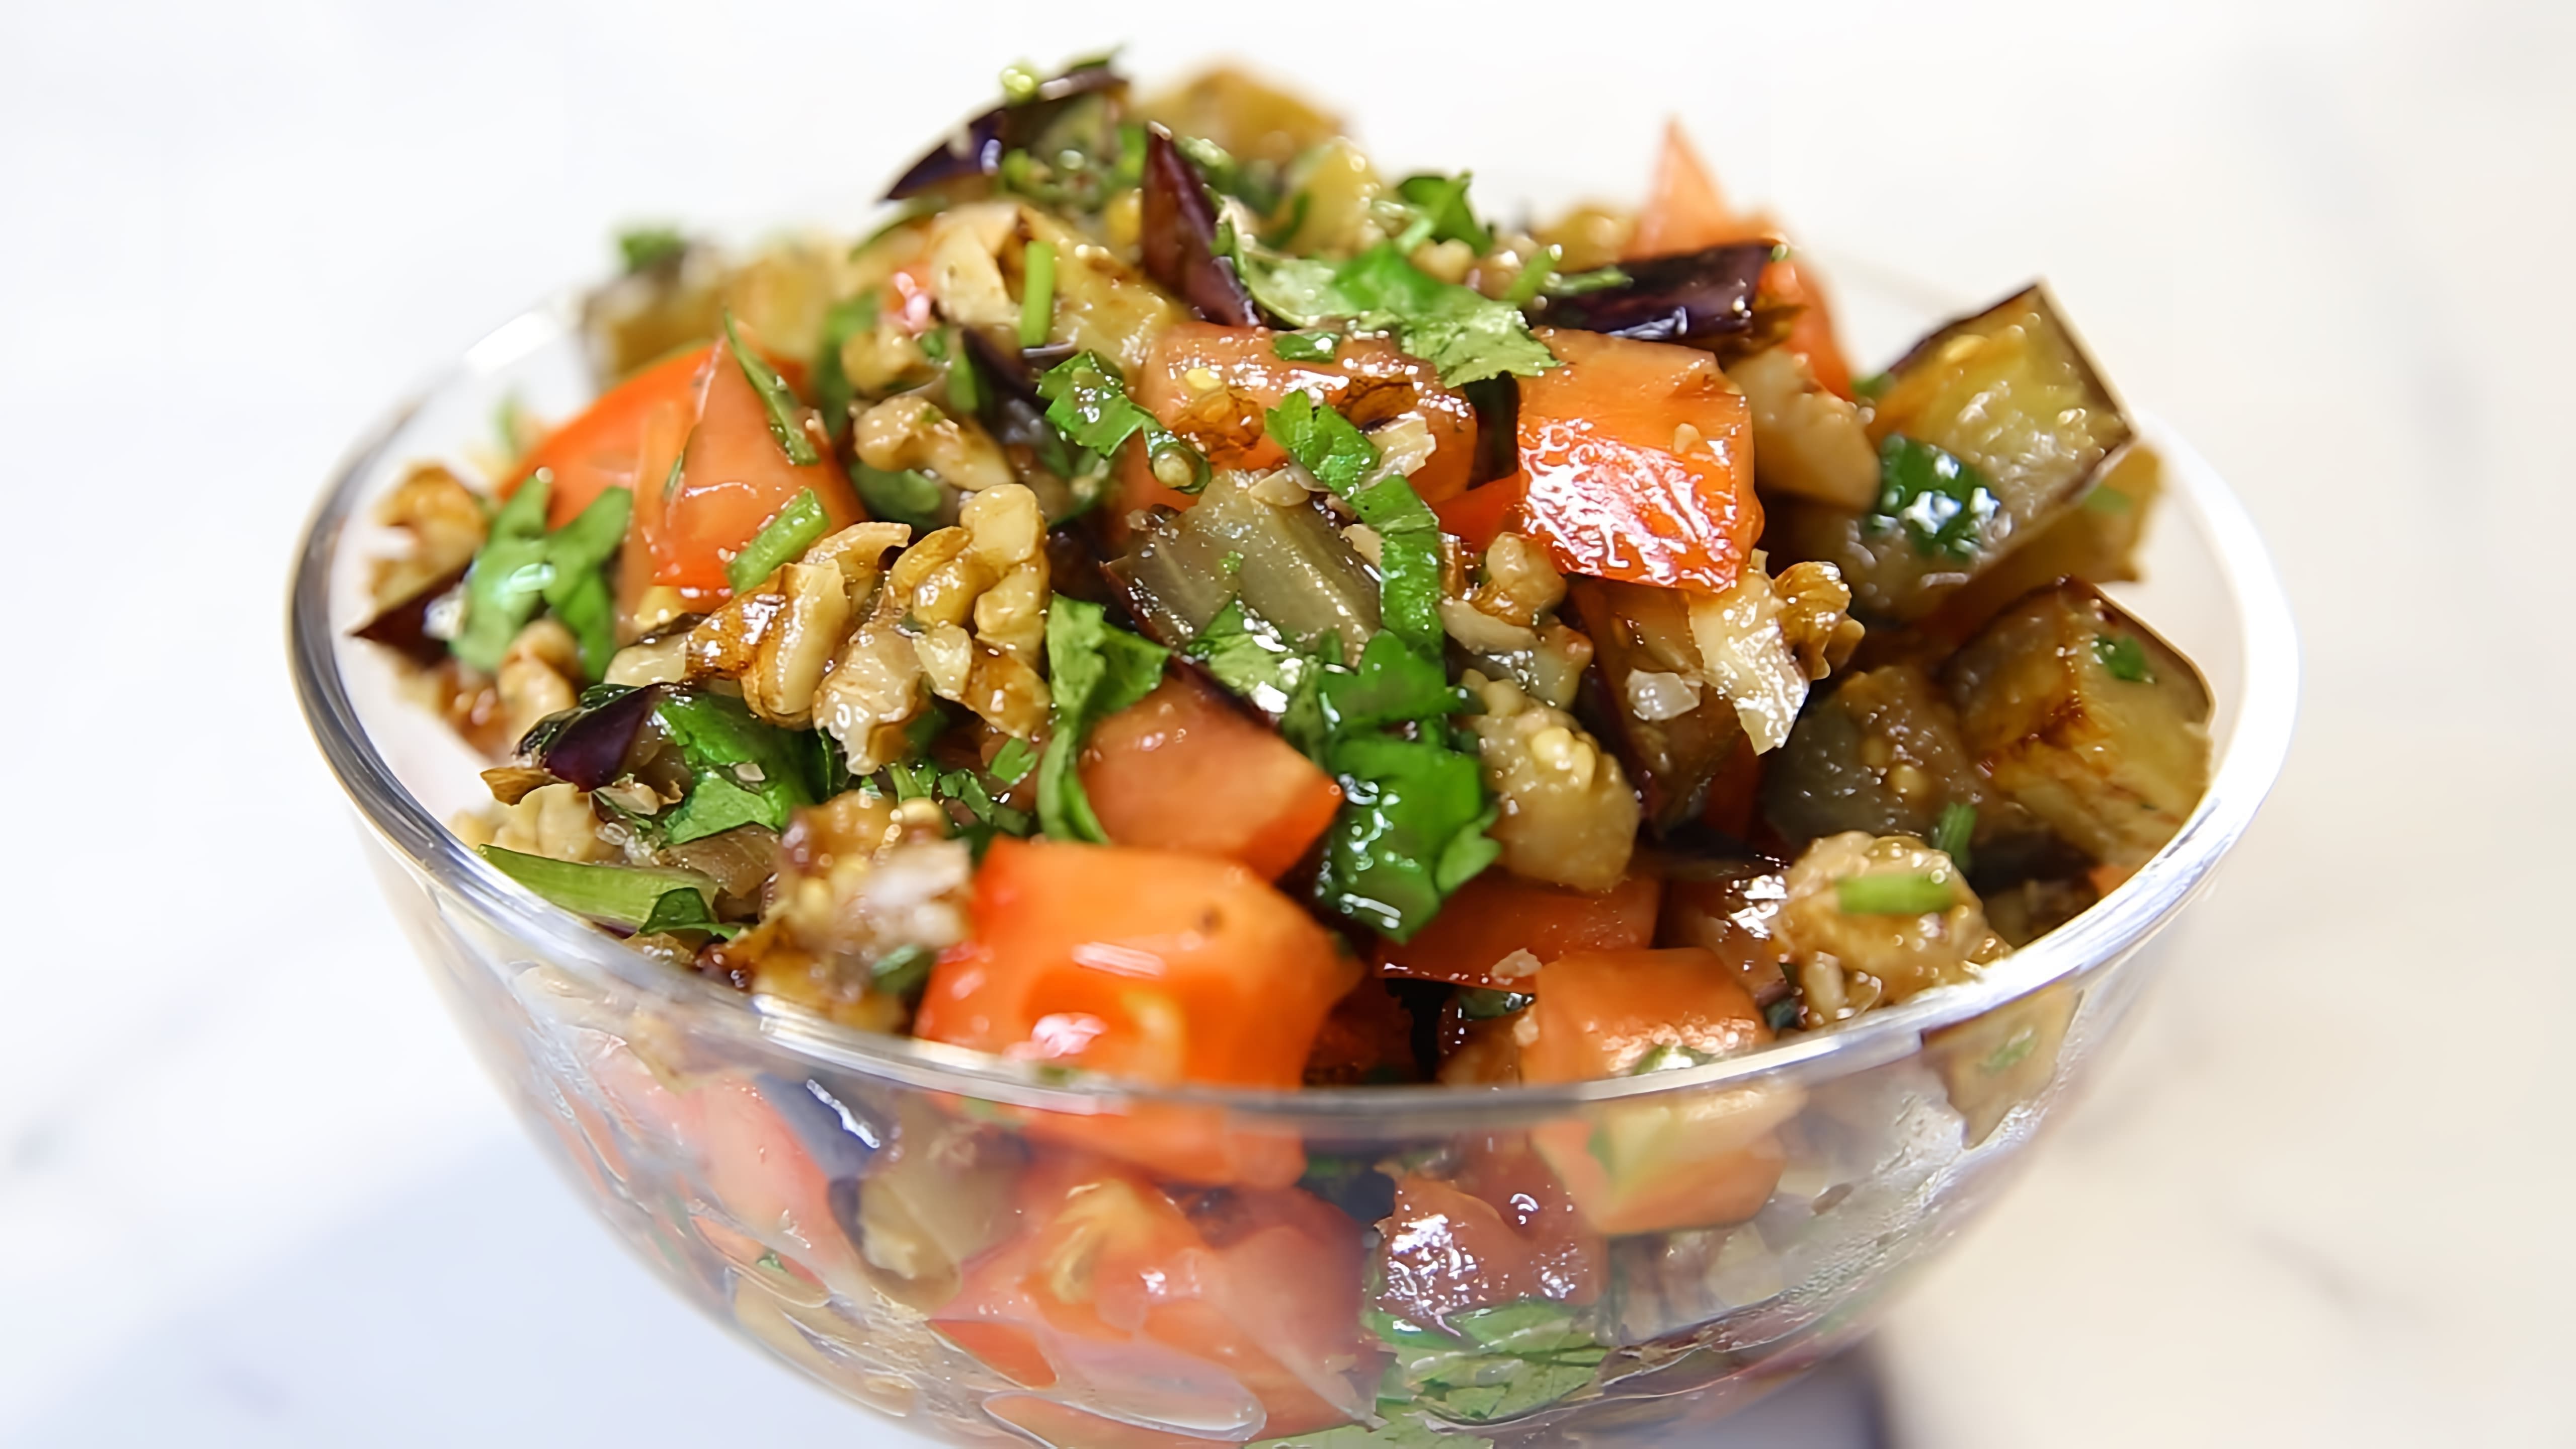 В этом видео демонстрируется рецепт вкусного салата с баклажанами